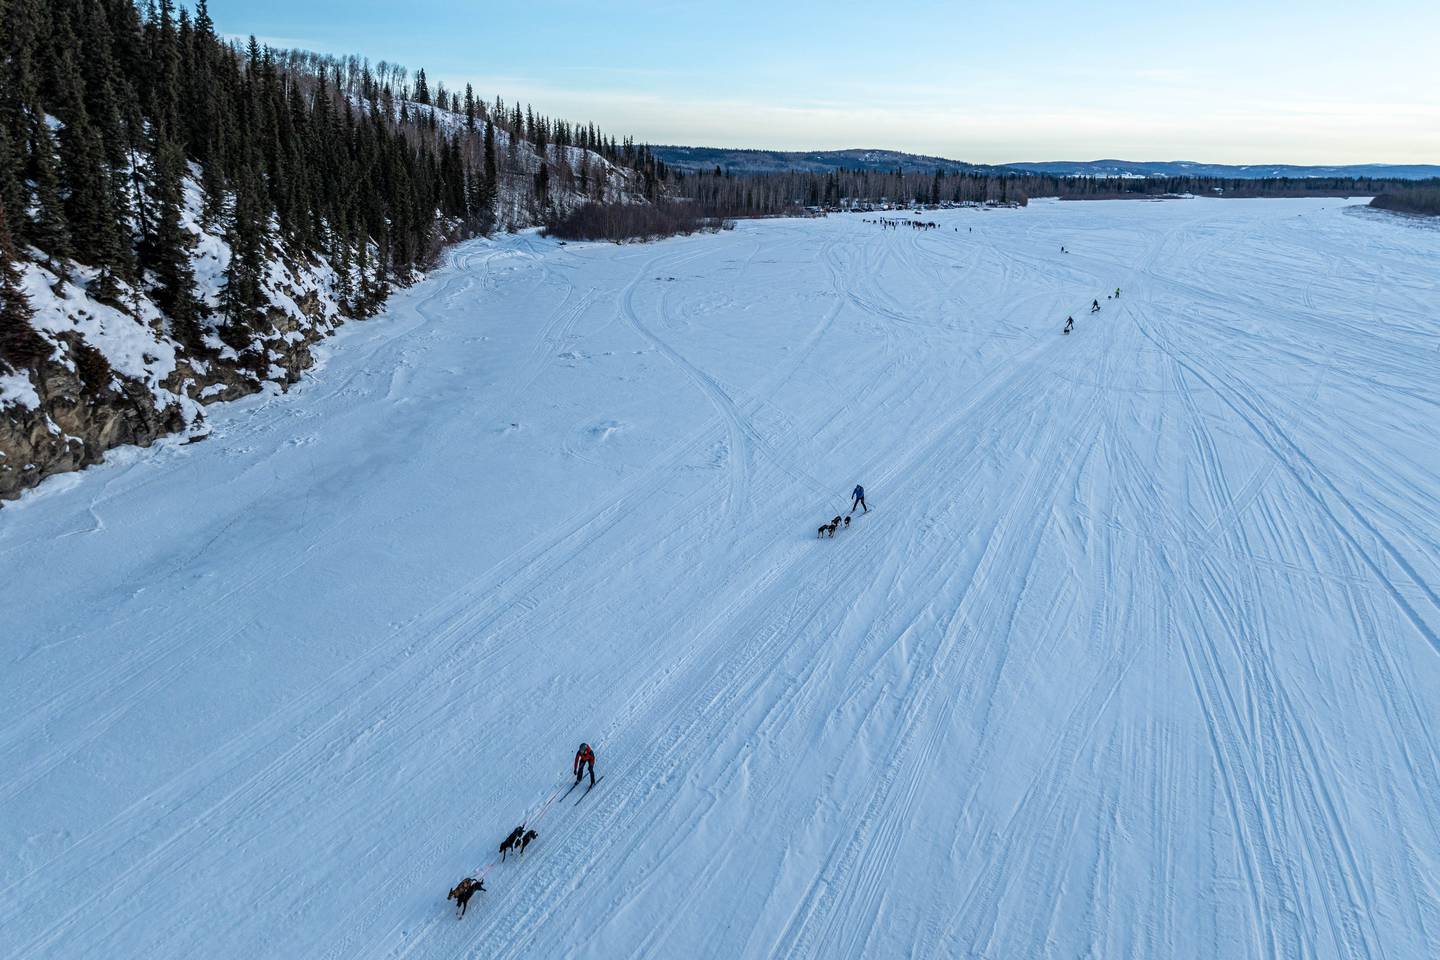 dog sled excursion alaska